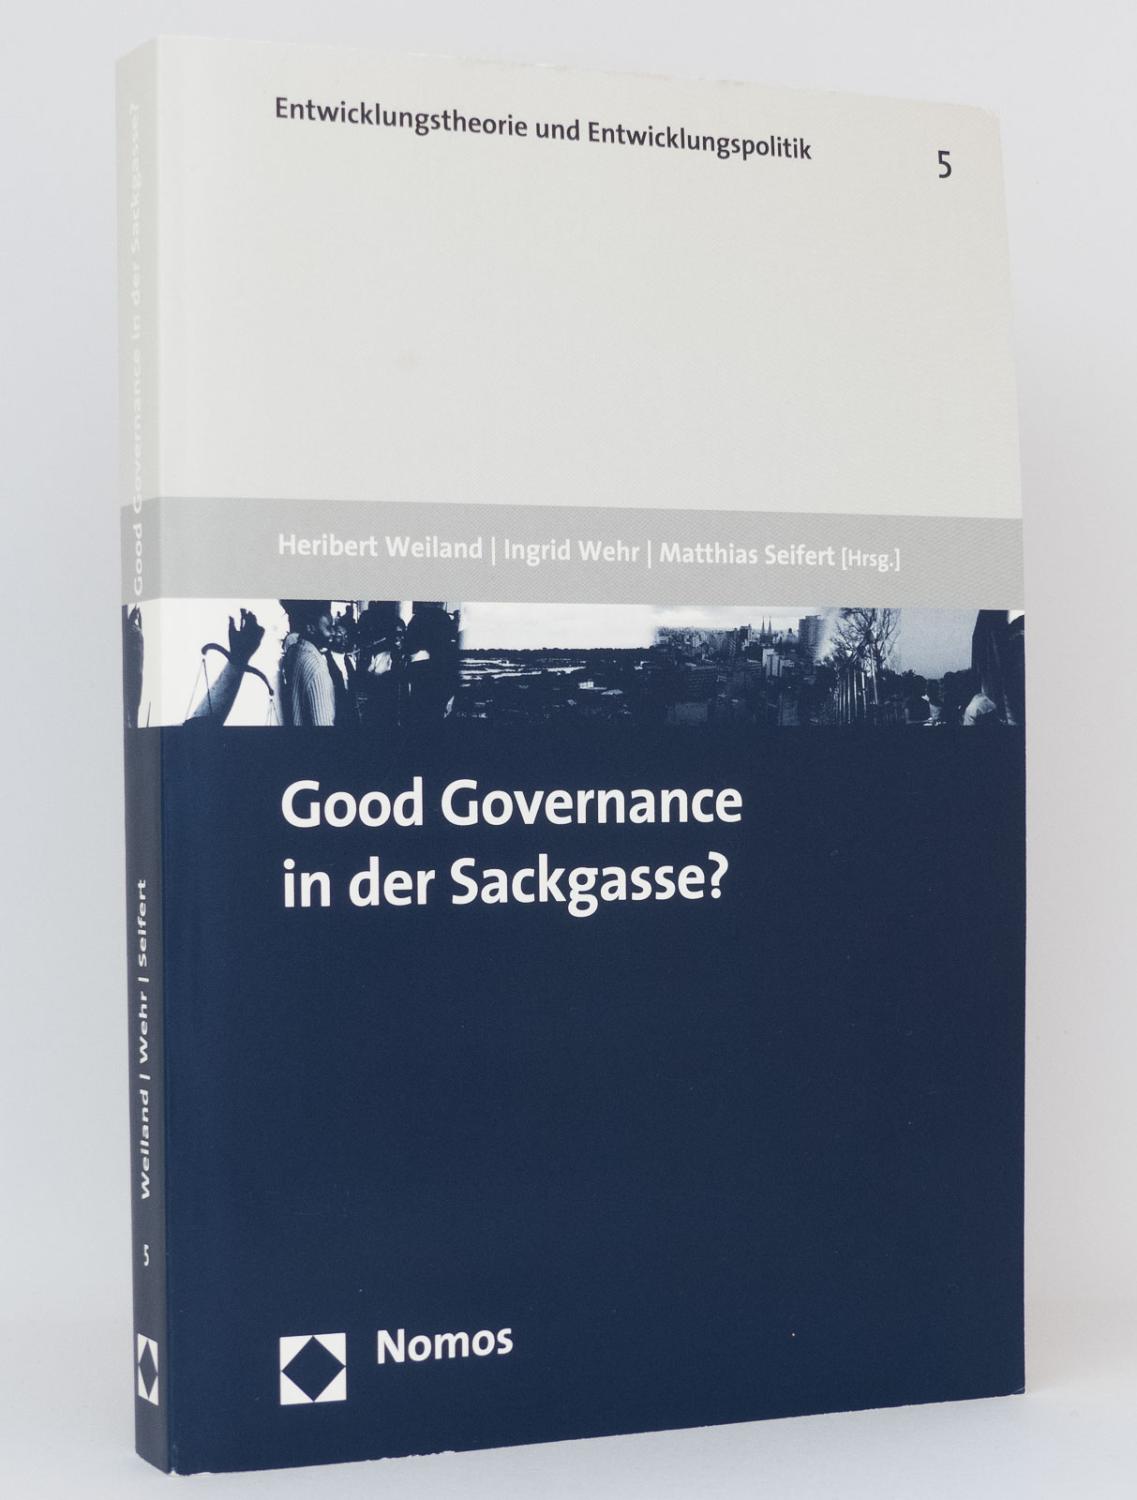 Good Governance in der Sackgasse? : (Reihe: Entwicklungstheorie und Entwicklungspolitik, Band 5) - Weiland, Heribert [Hg.]